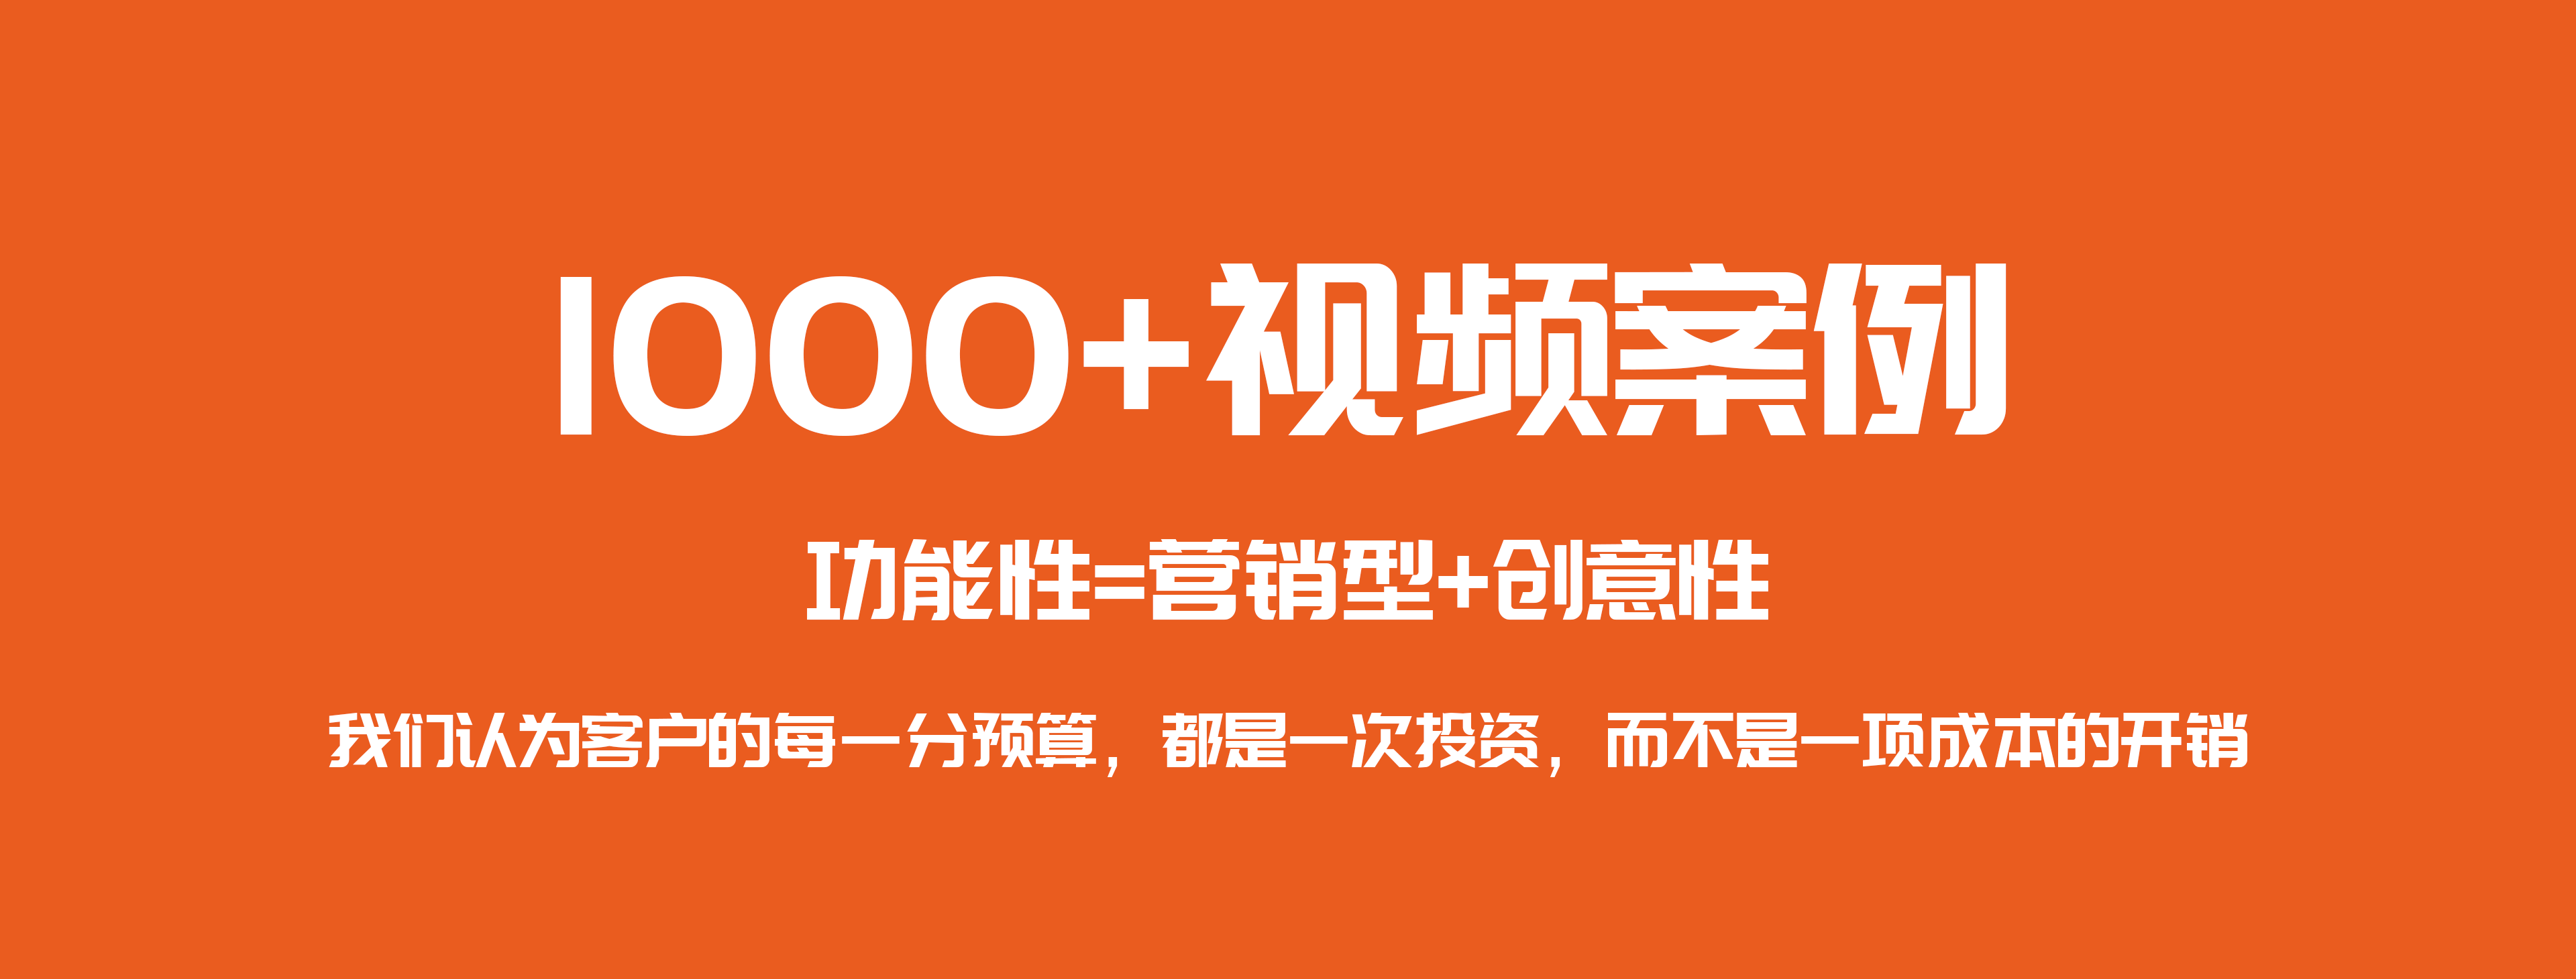 1000+视频案例_北京企业宣传片制作拍摄_电视广告片方案_三维动画公司